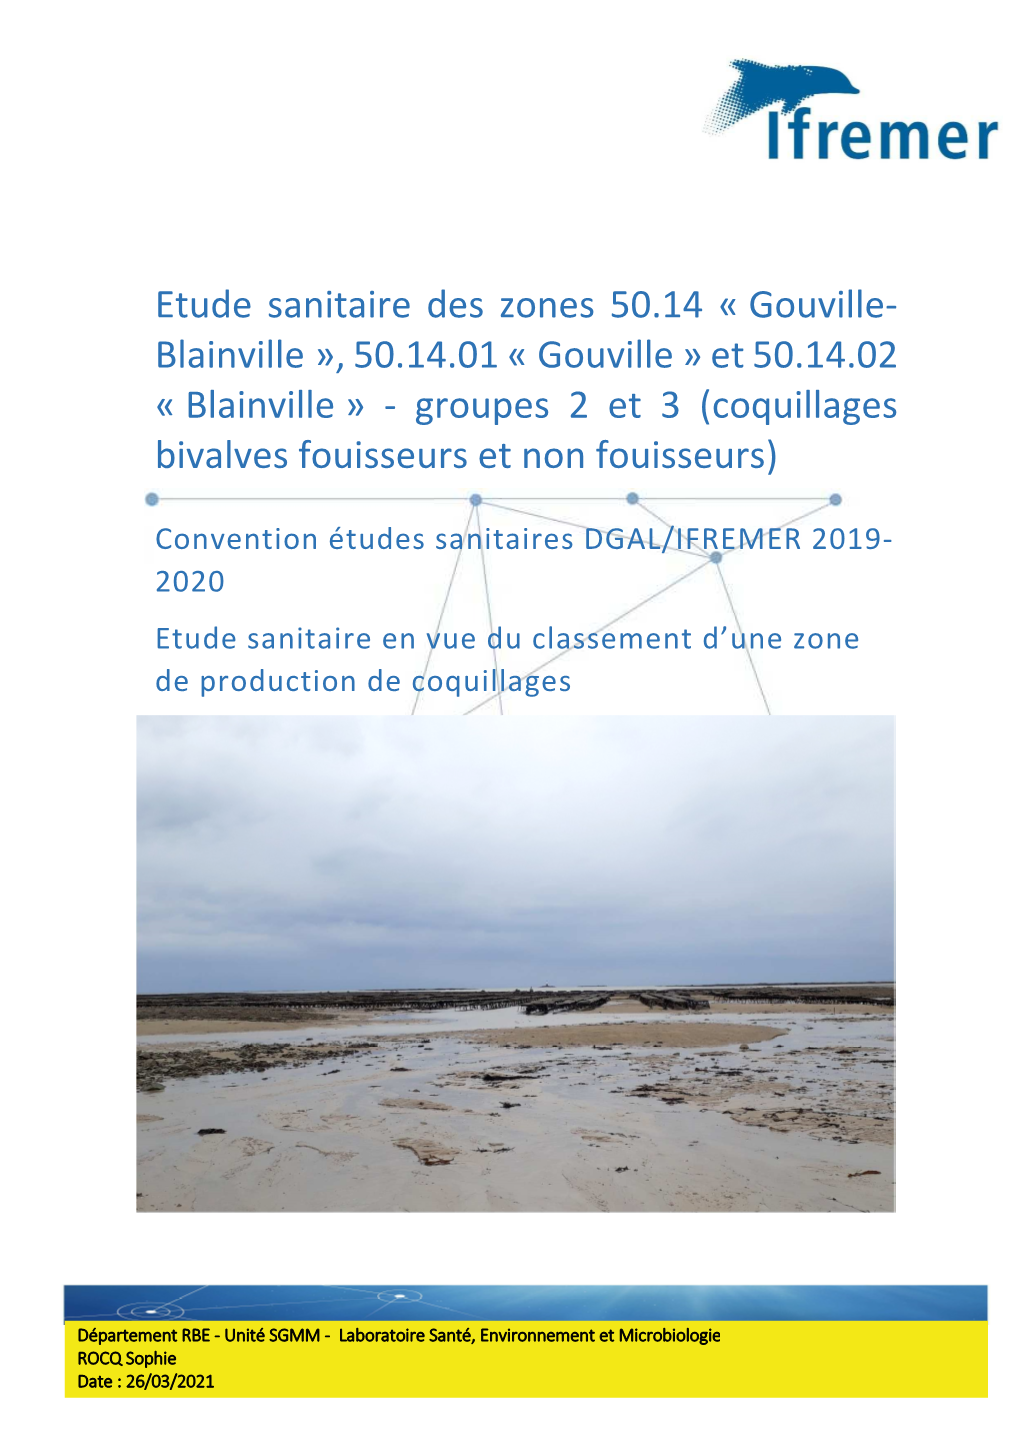 Gouville- Blainville », 50.14.01 « Gouville » Et 50.14.02 « Blainville » - Groupes 2 Et 3 (Coquillages Bivalves Fouisseurs Et Non Fouisseurs)